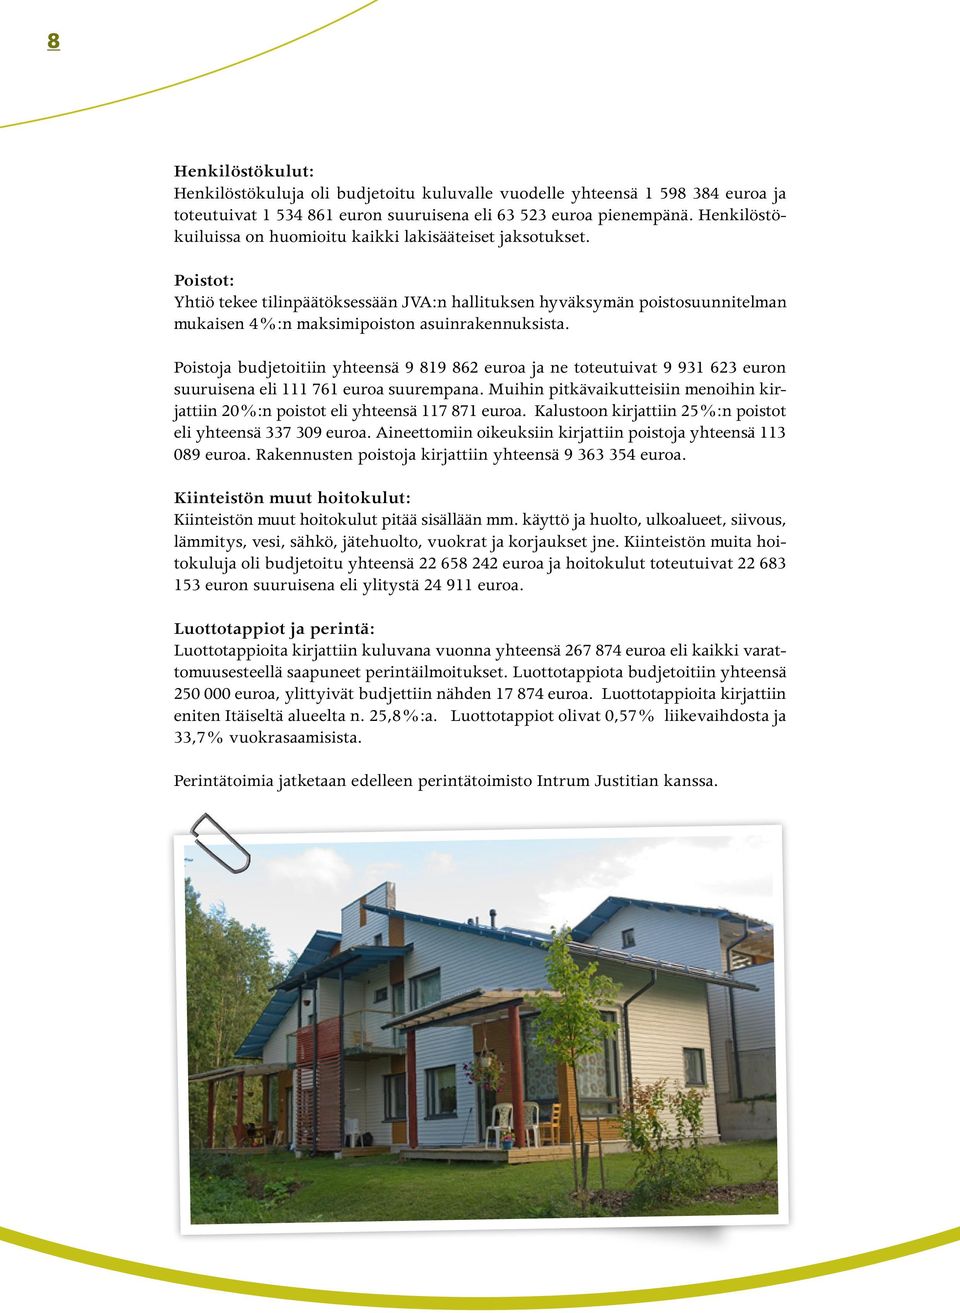 Poistot: Yhtiö tekee tilinpäätöksessään JVA:n hallituksen hyväksymän poistosuunnitelman mukaisen 4 %:n maksimipoiston asuinrakennuksista.